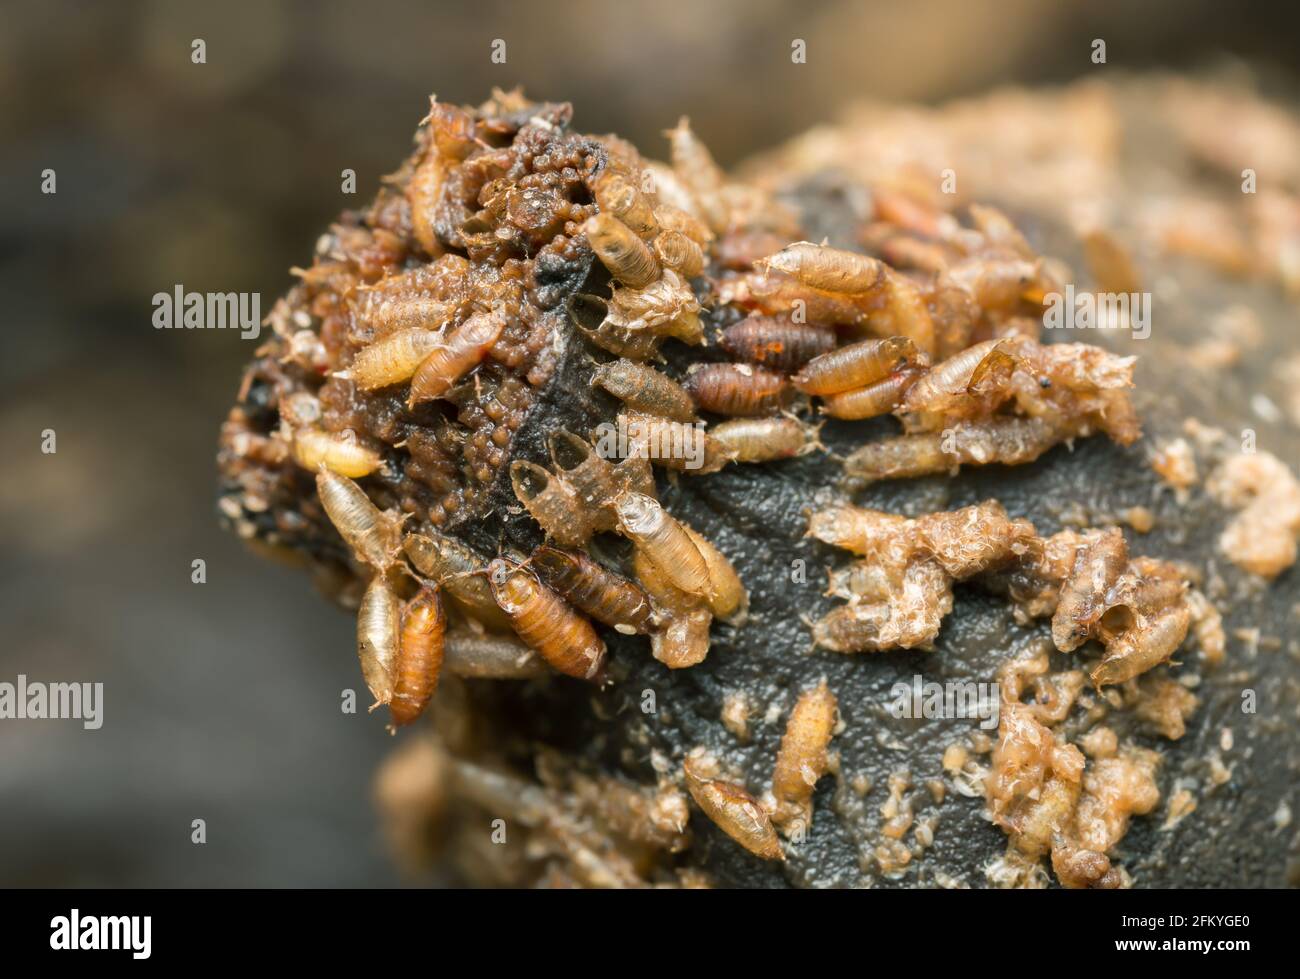 Les larves et les pupes dans la banane de la mouche commune des fruits, Drosophila melanogaster Banque D'Images